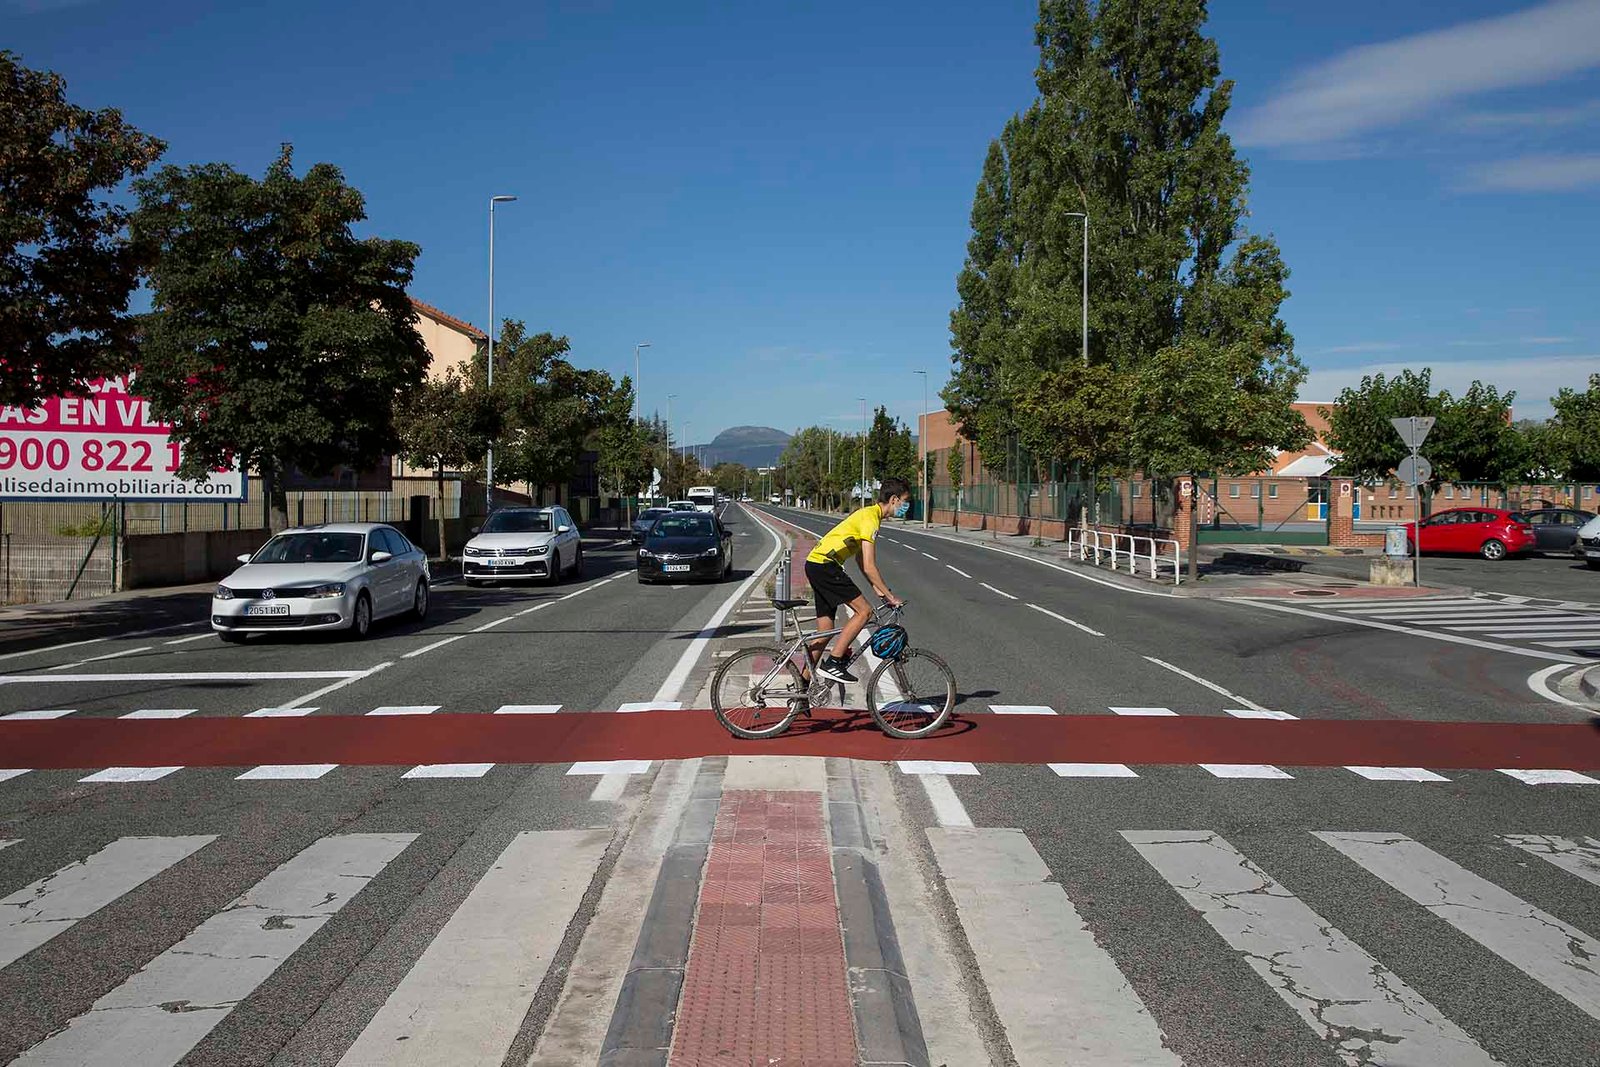 Adjudicados los trabajos para la ejecución de un nuevo tramo de carril bici a través de la avenida de Barañáin que conectará la Plaza de Europa y la avenida de Navarra